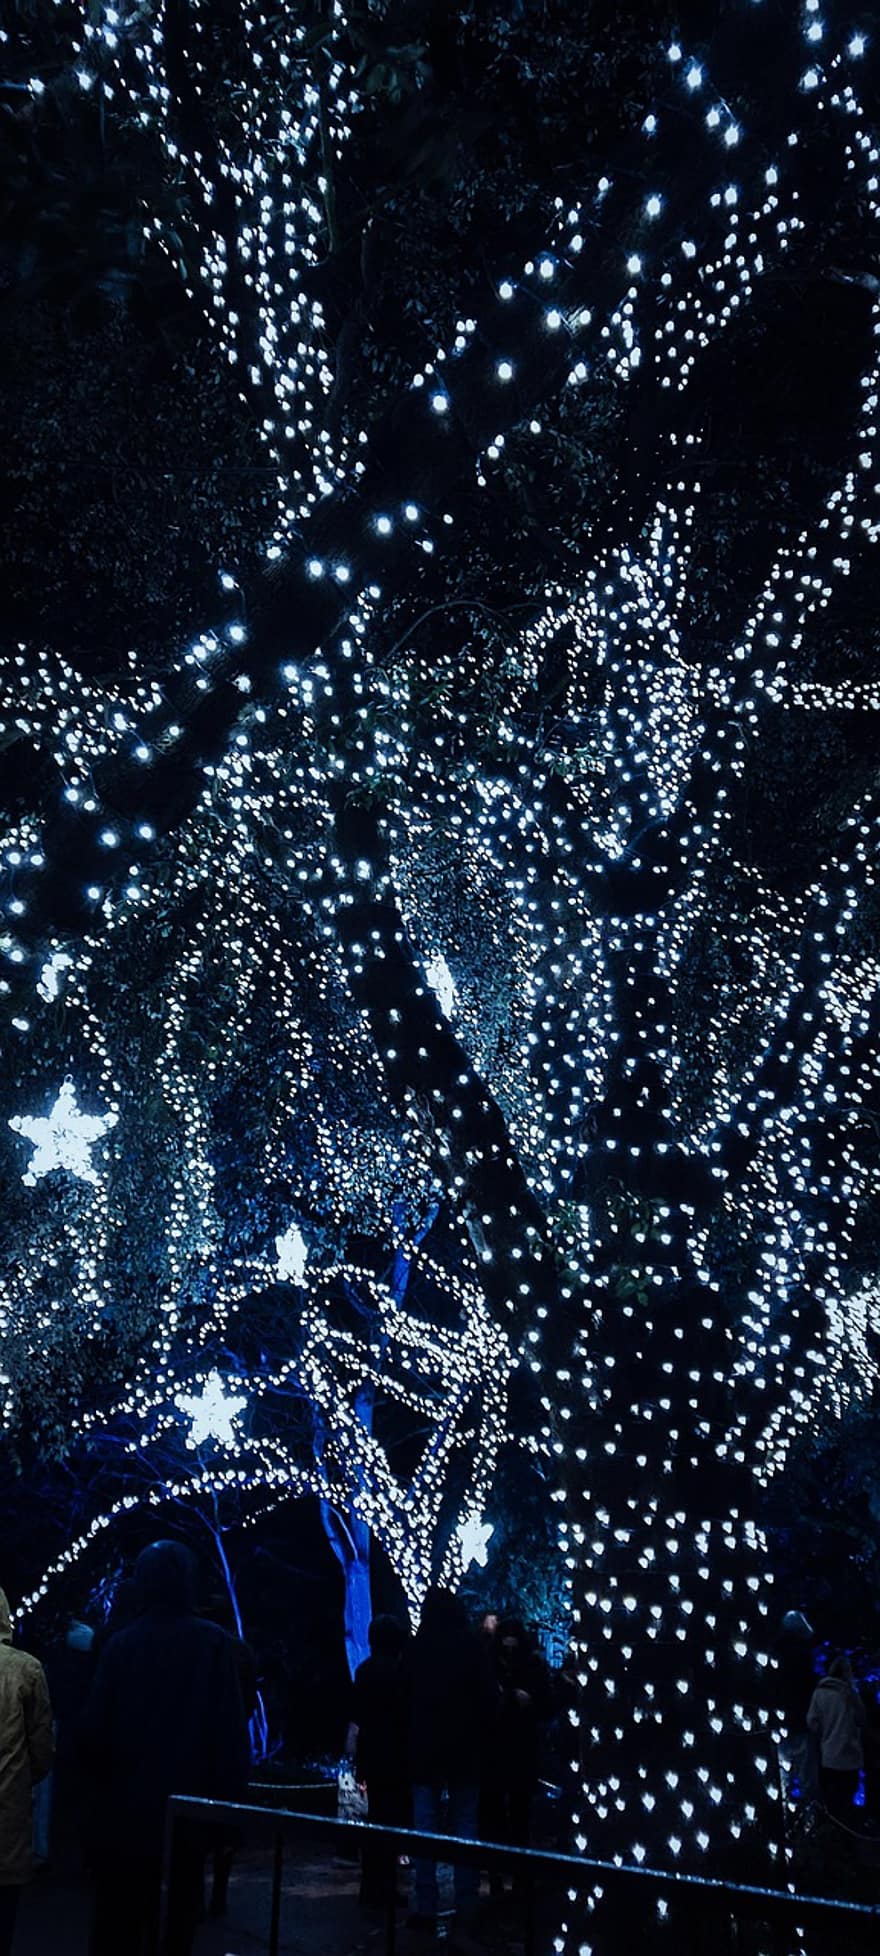 fa, tündér fények, megvilágított, Karácsonyi fények, csillagok, karácsonyi csillagok, világít, fénylő, izzó fények, karácsonyi díszek, éjszaka